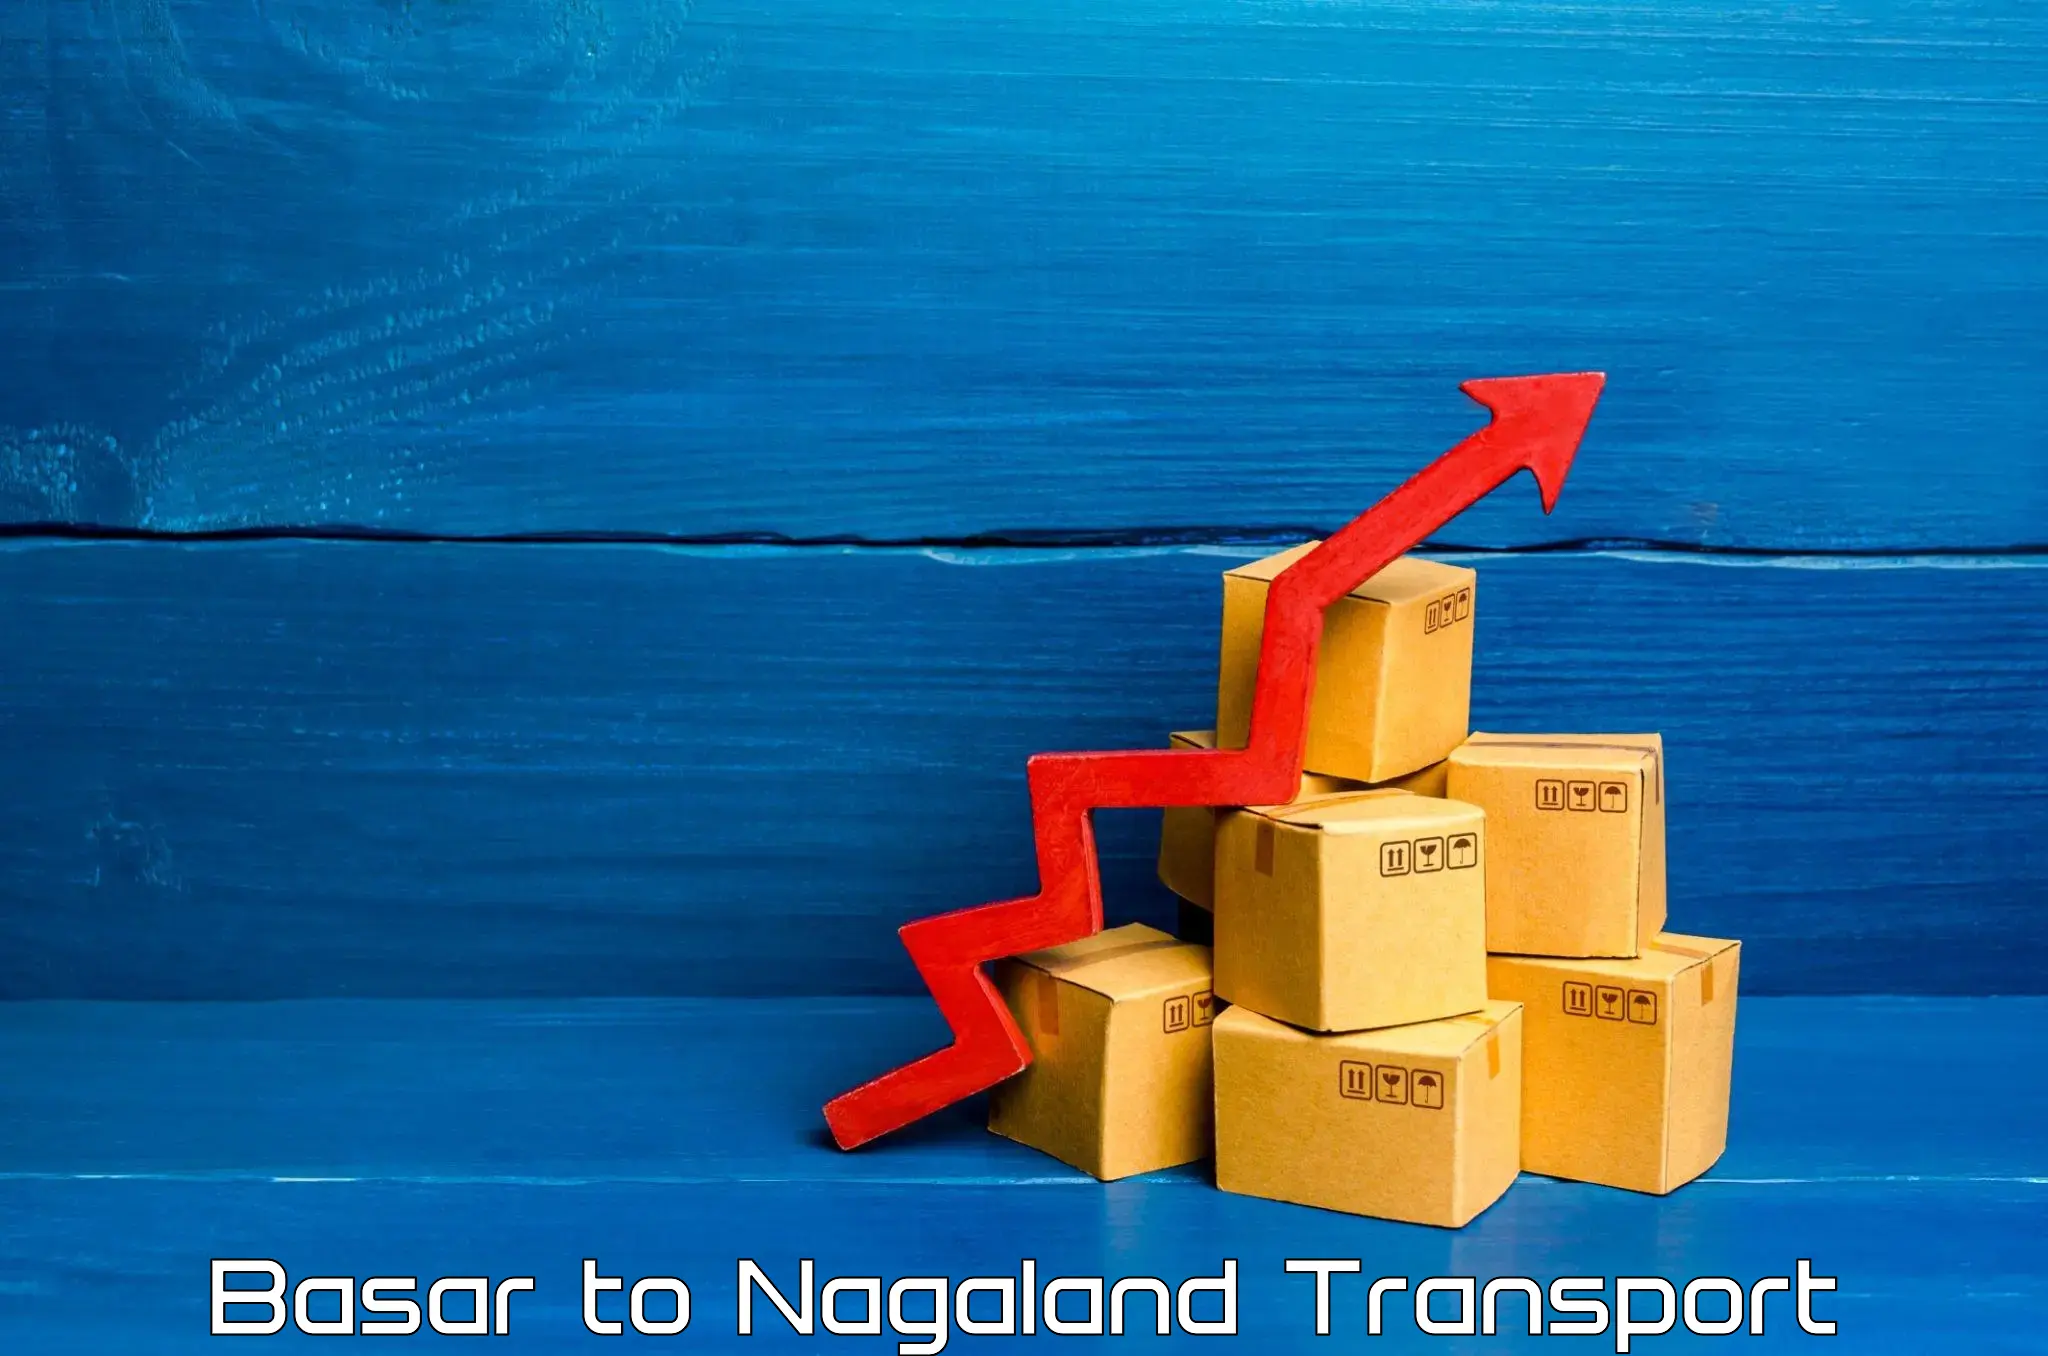 Cycle transportation service Basar to NIT Nagaland